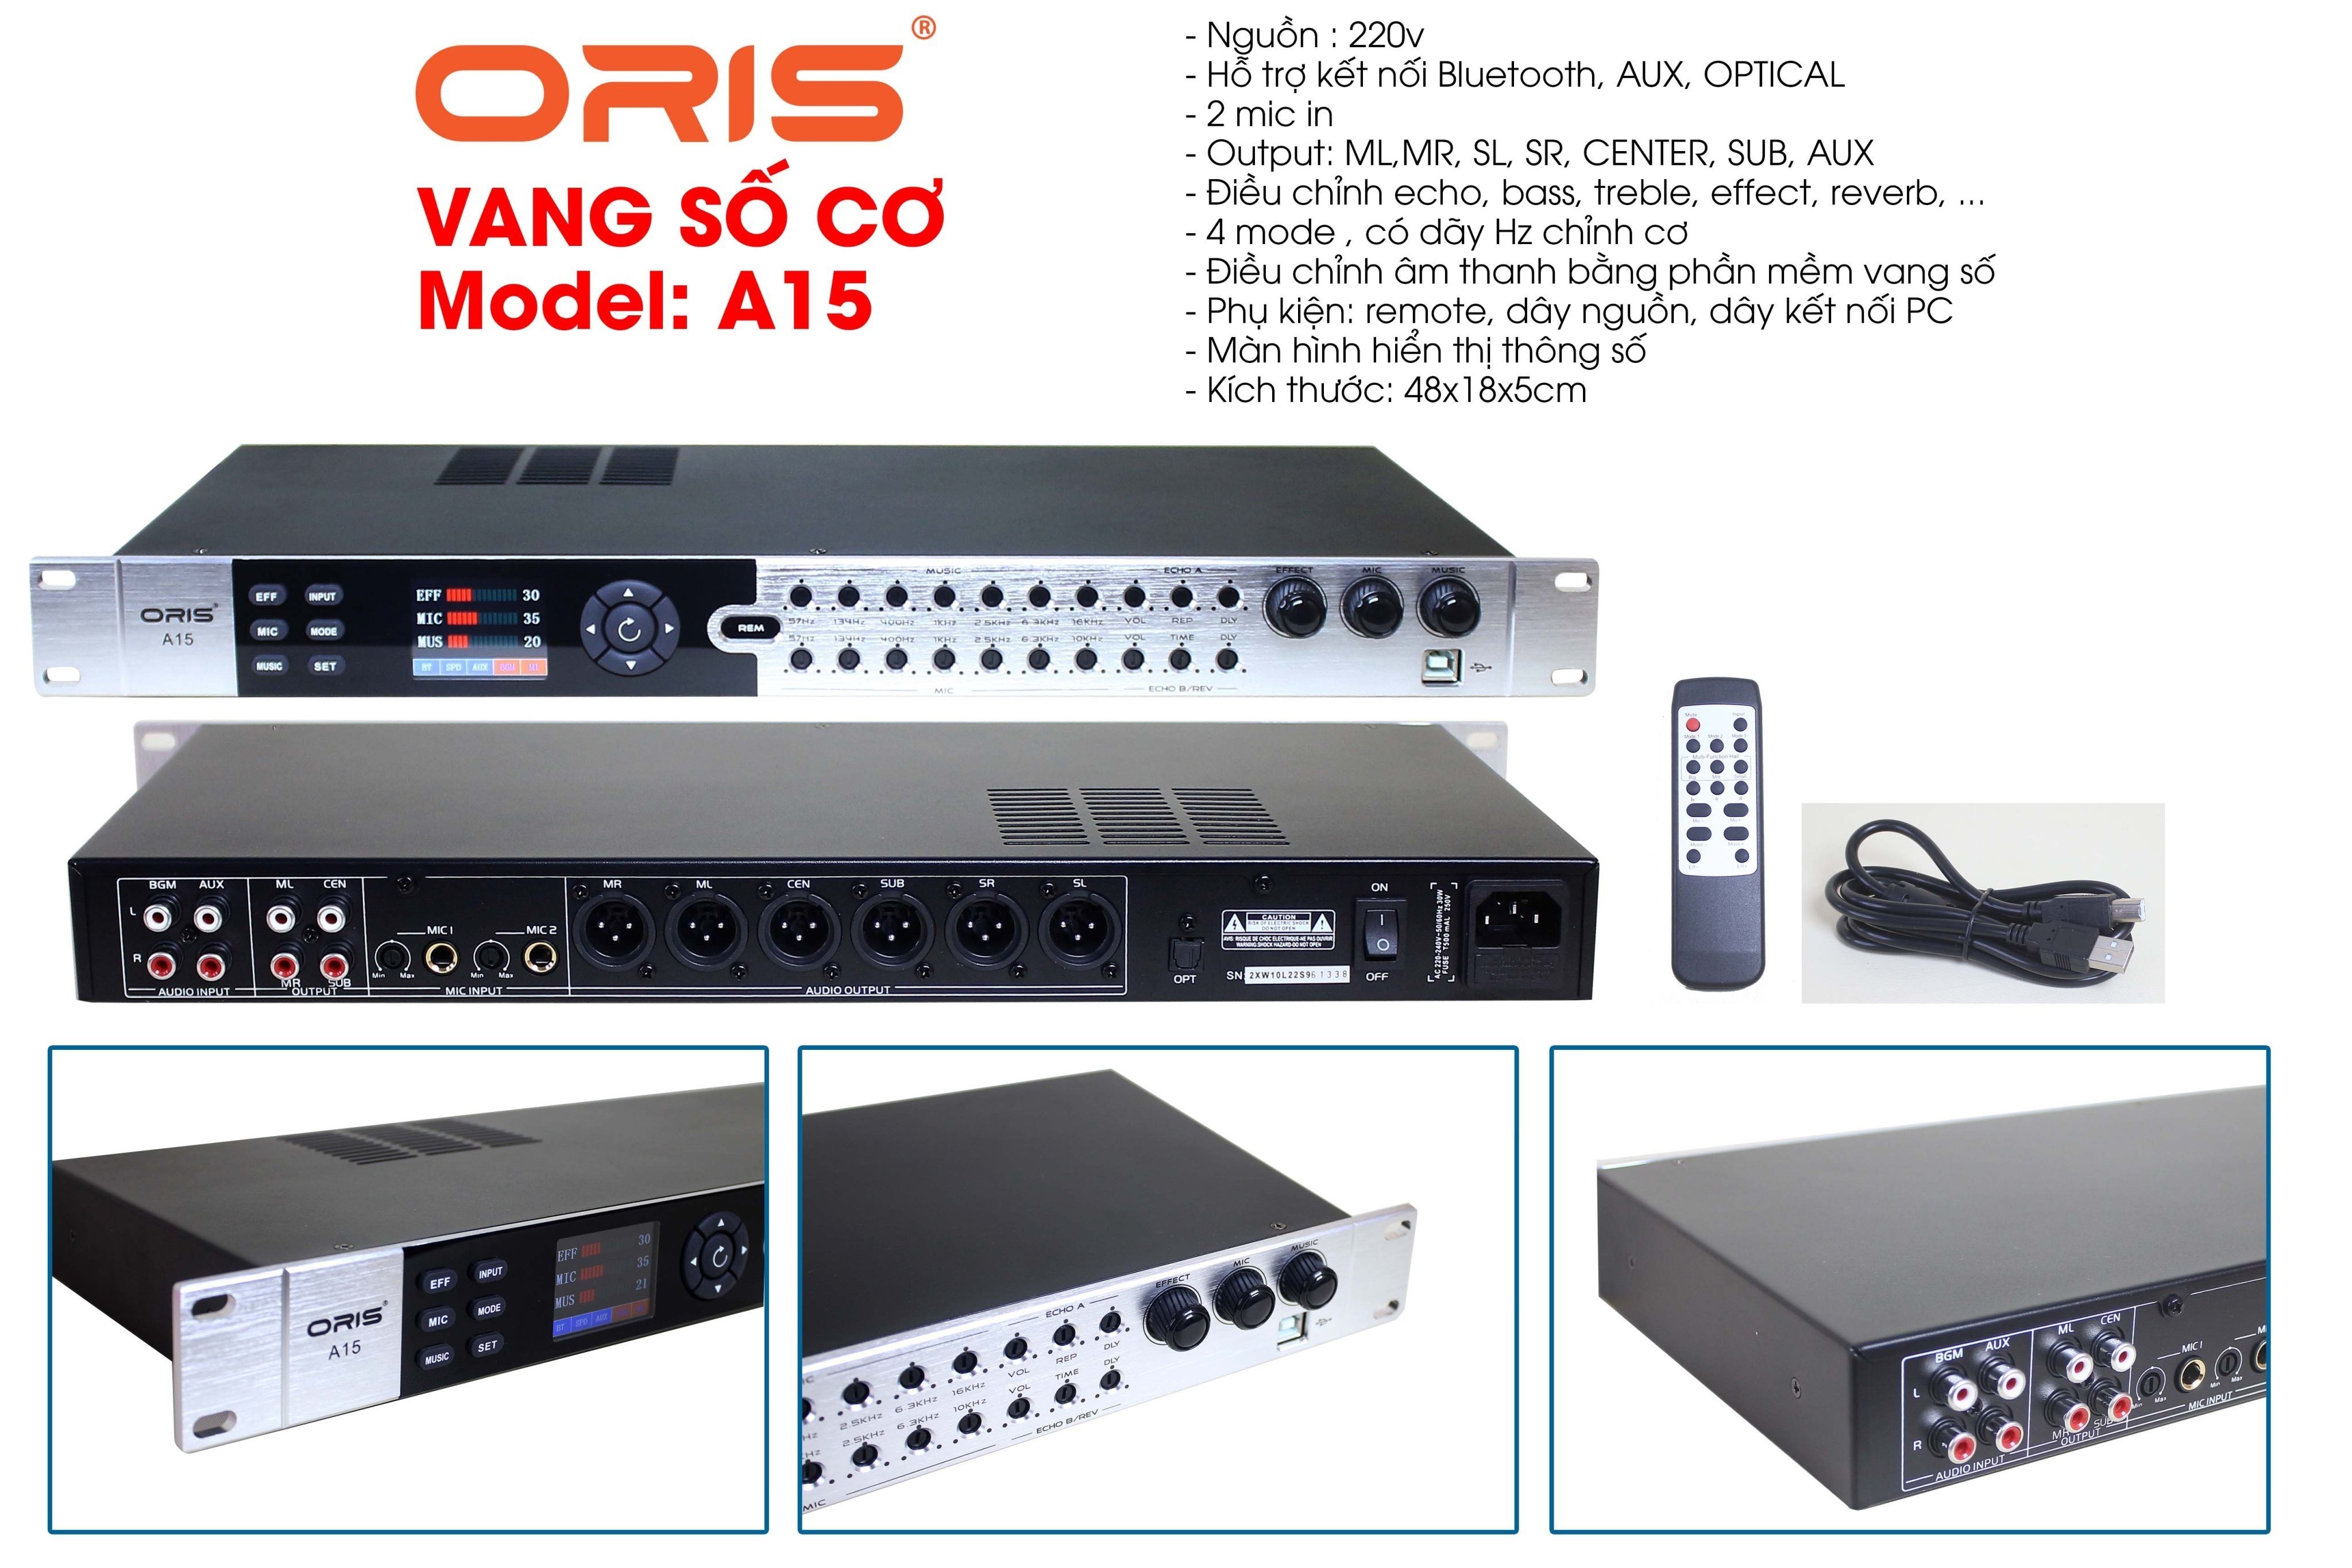 Vang số cao cấp có chỉnh cơ Oris A15 chống hú rít tốt, khả năng xử lý âm thanh chính xác và chi tiết nhất